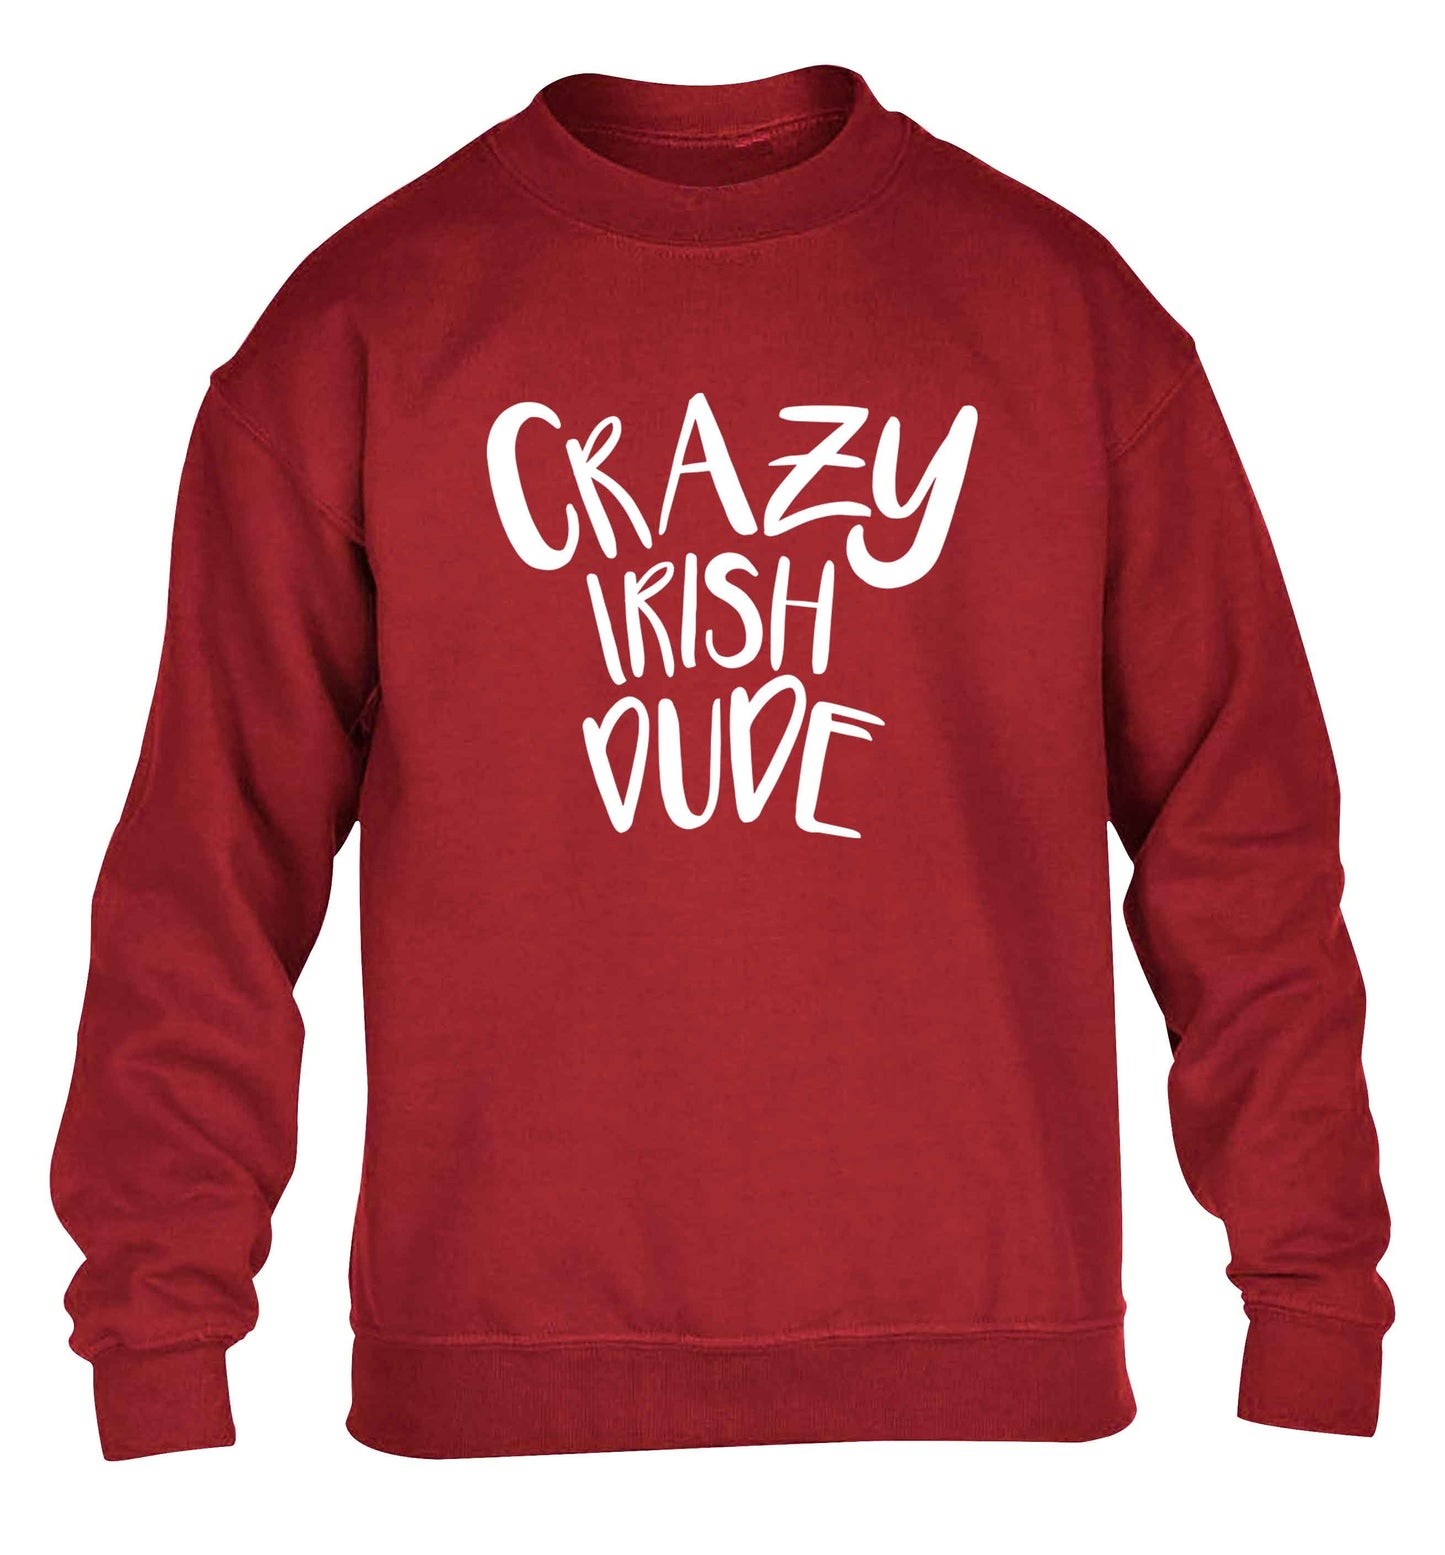 Crazy Irish dude children's grey sweater 12-13 Years